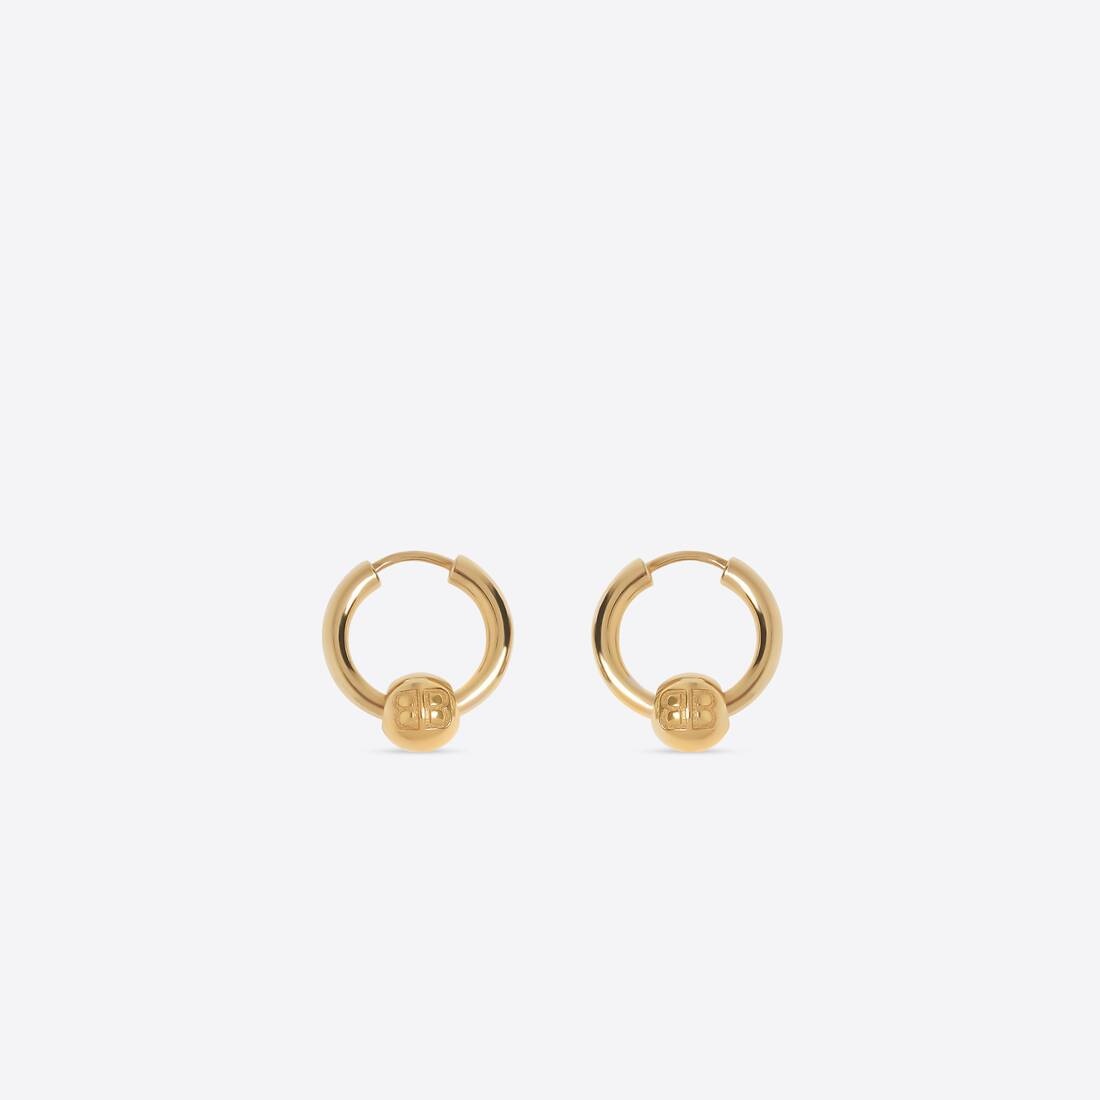 Force Xs Earrings in Gold - 1